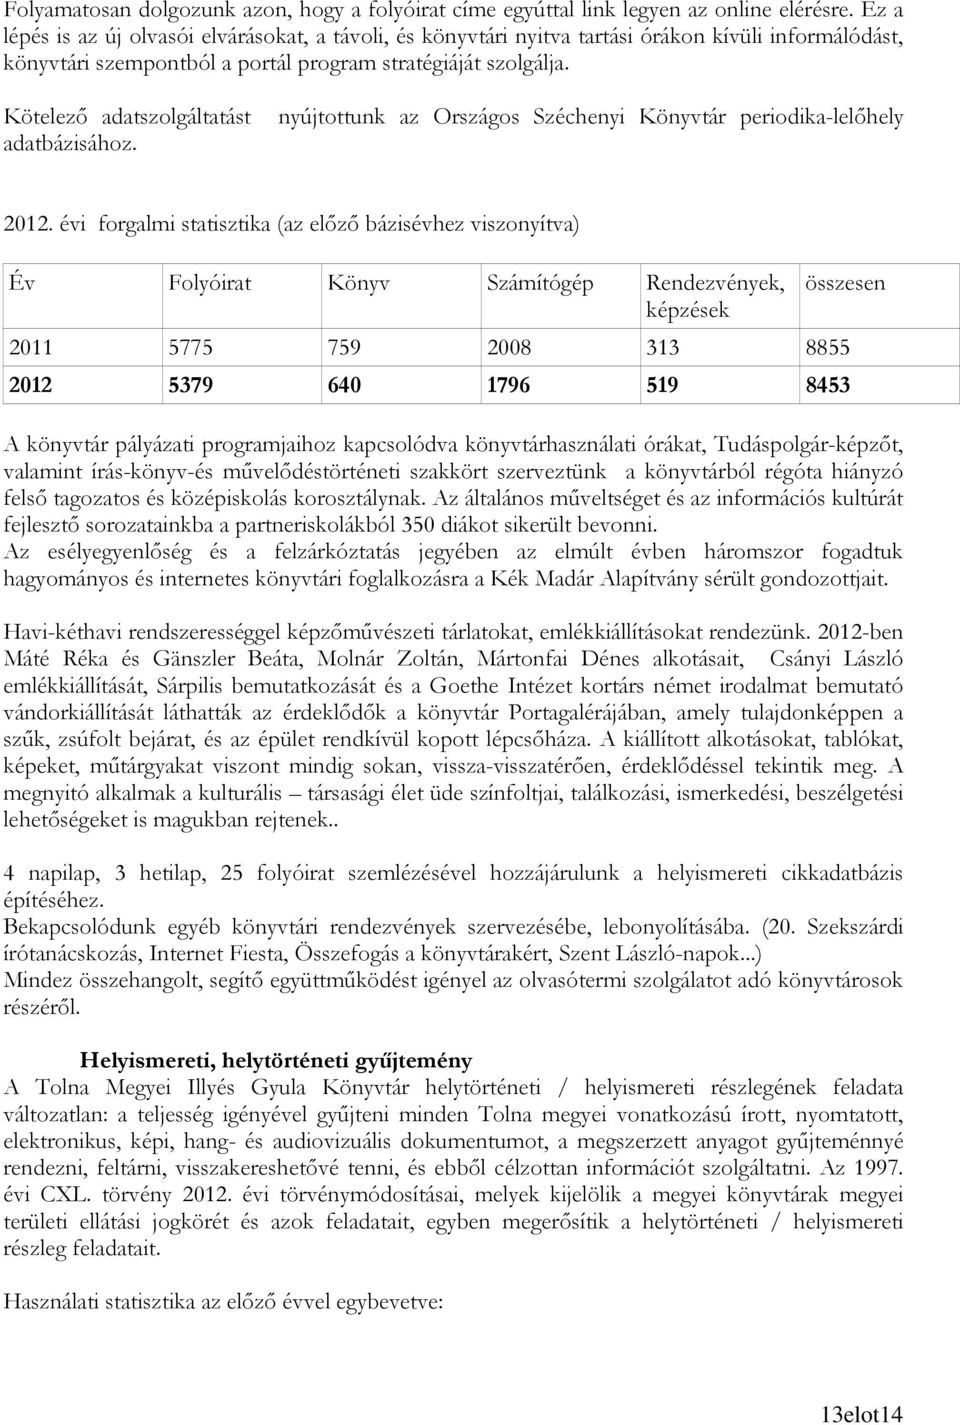 Kötelezı adatszolgáltatást adatbázisához. nyújtottunk az Országos Széchenyi Könyvtár periodika-lelıhely 2012.